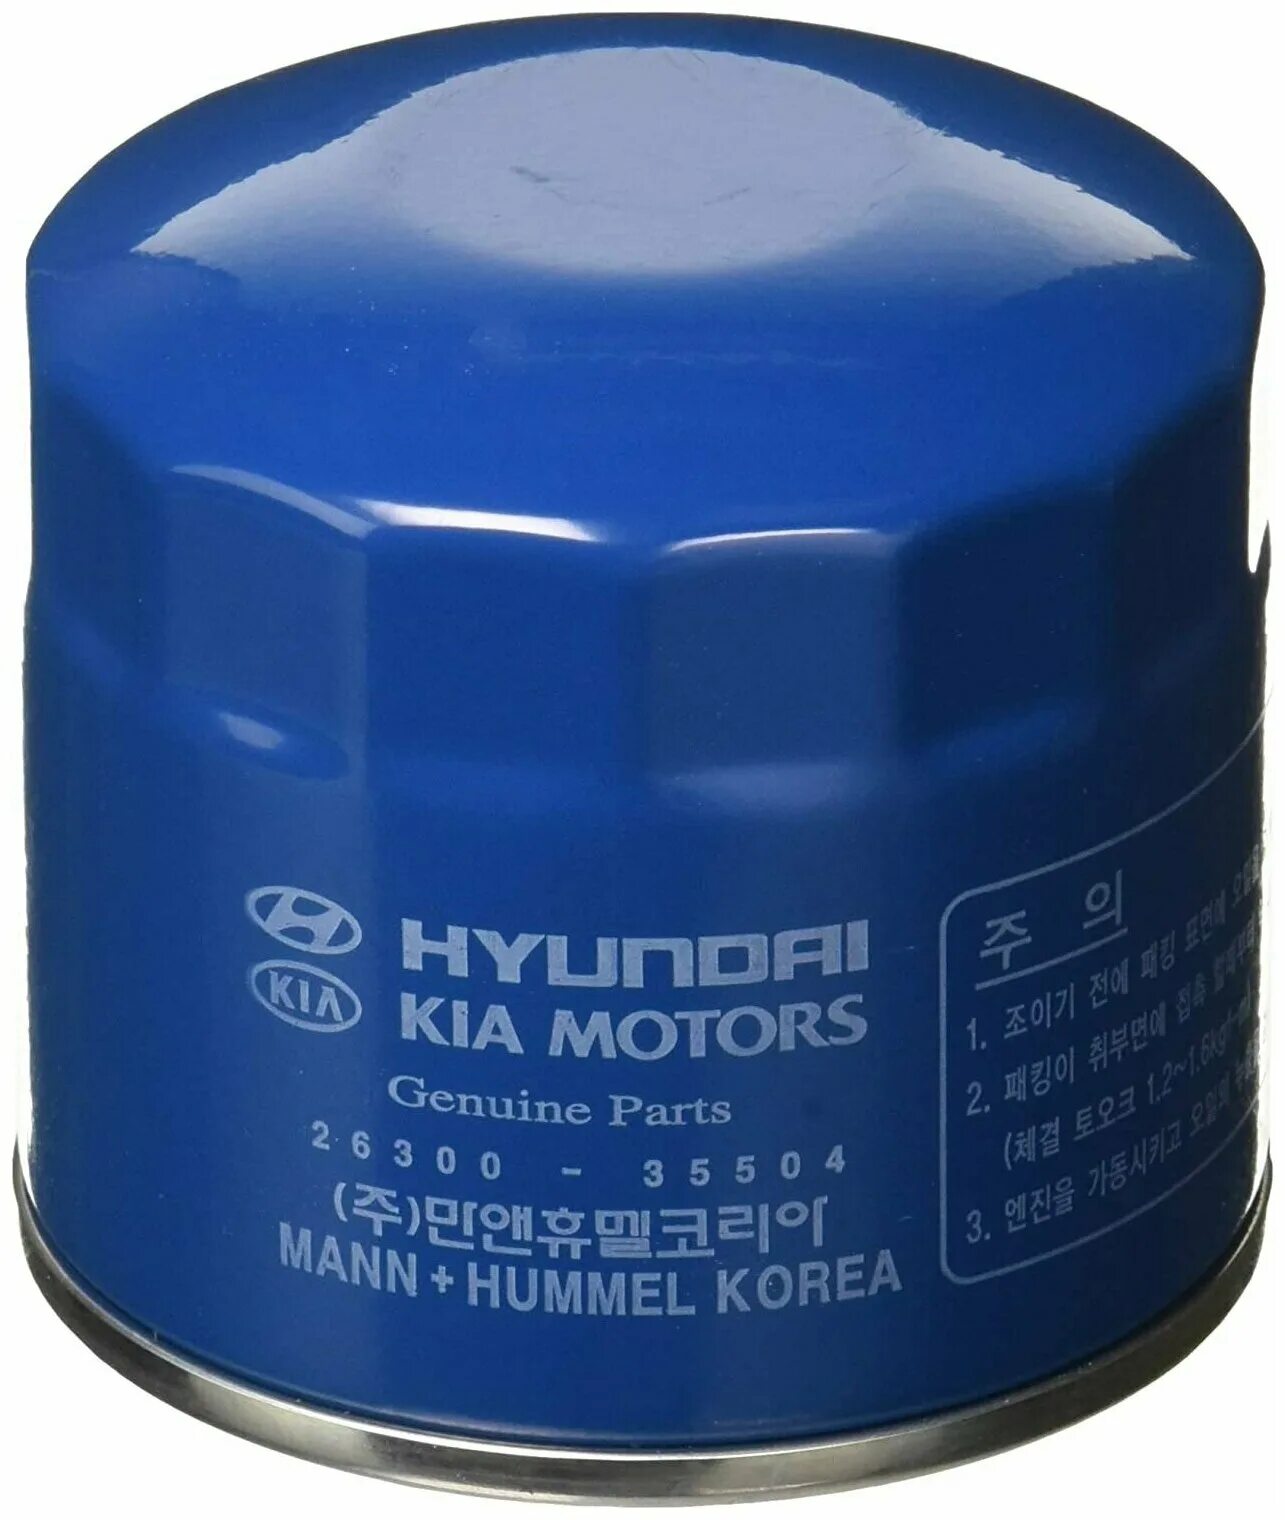 Фильтр масла хендай солярис. Масляный фильтр Hyundai 26300-35505. Hyundai/Kia 26300-35504 фильтр масляный. 2630035505 Фильтр масляный. Фильтр 26300-35504.